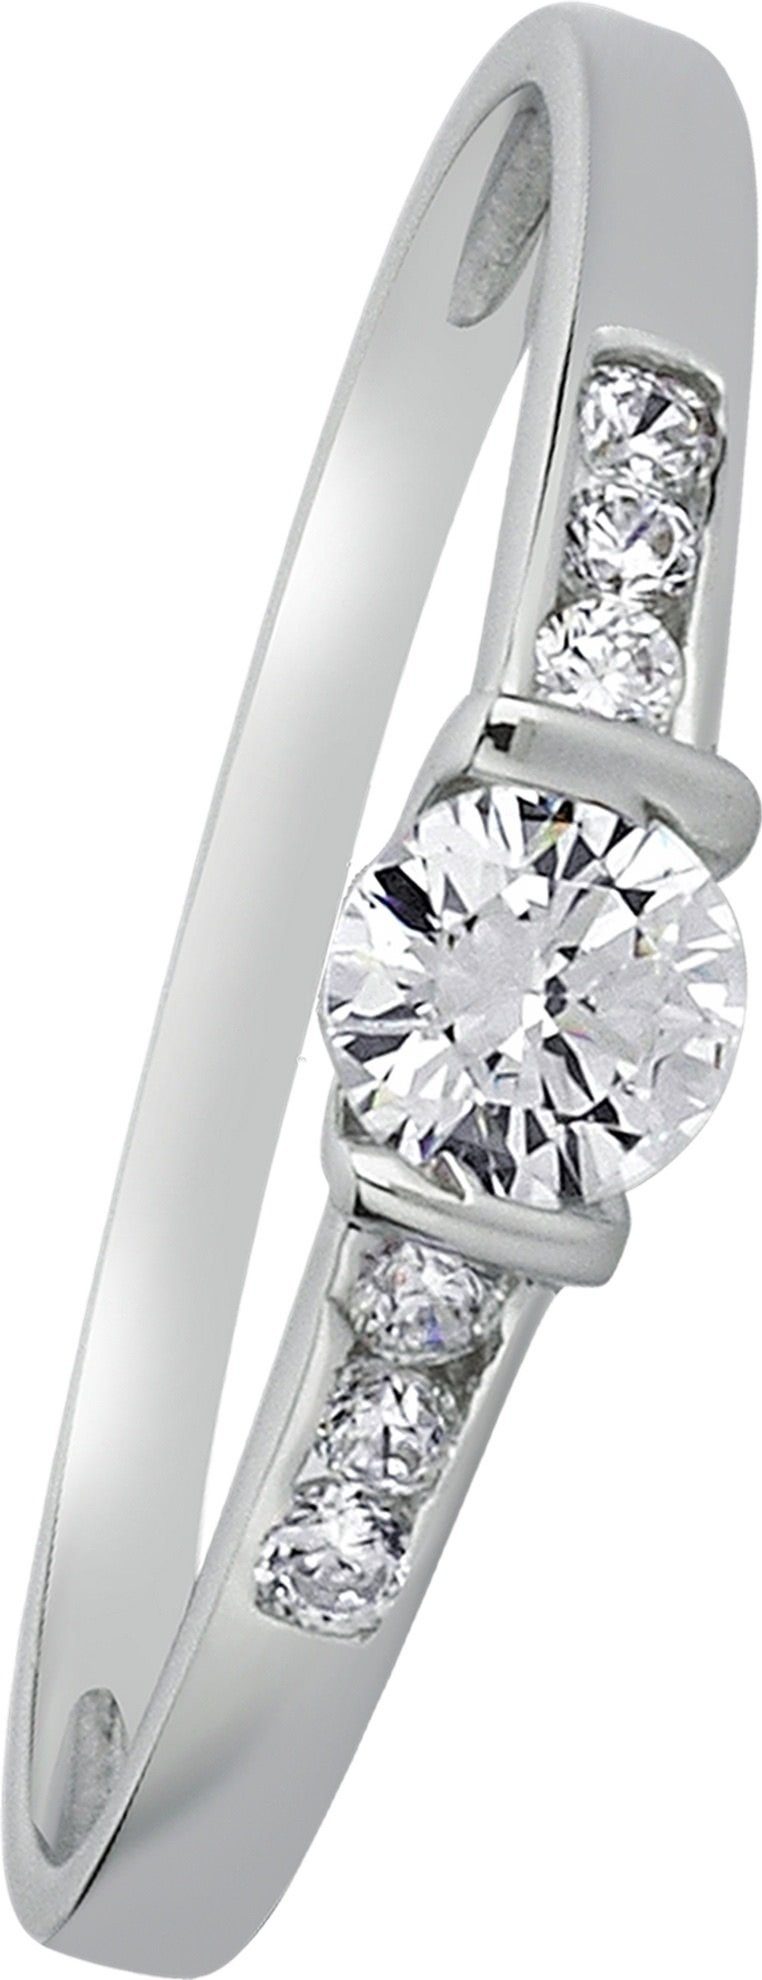 Kristall Farbe: 333 aus (Fingerring), Ring Balia Balia 8 weiß, silber Ring Gr.58 Karat, 8Karat Goldring Damen Weißgold Damen Weißgold -